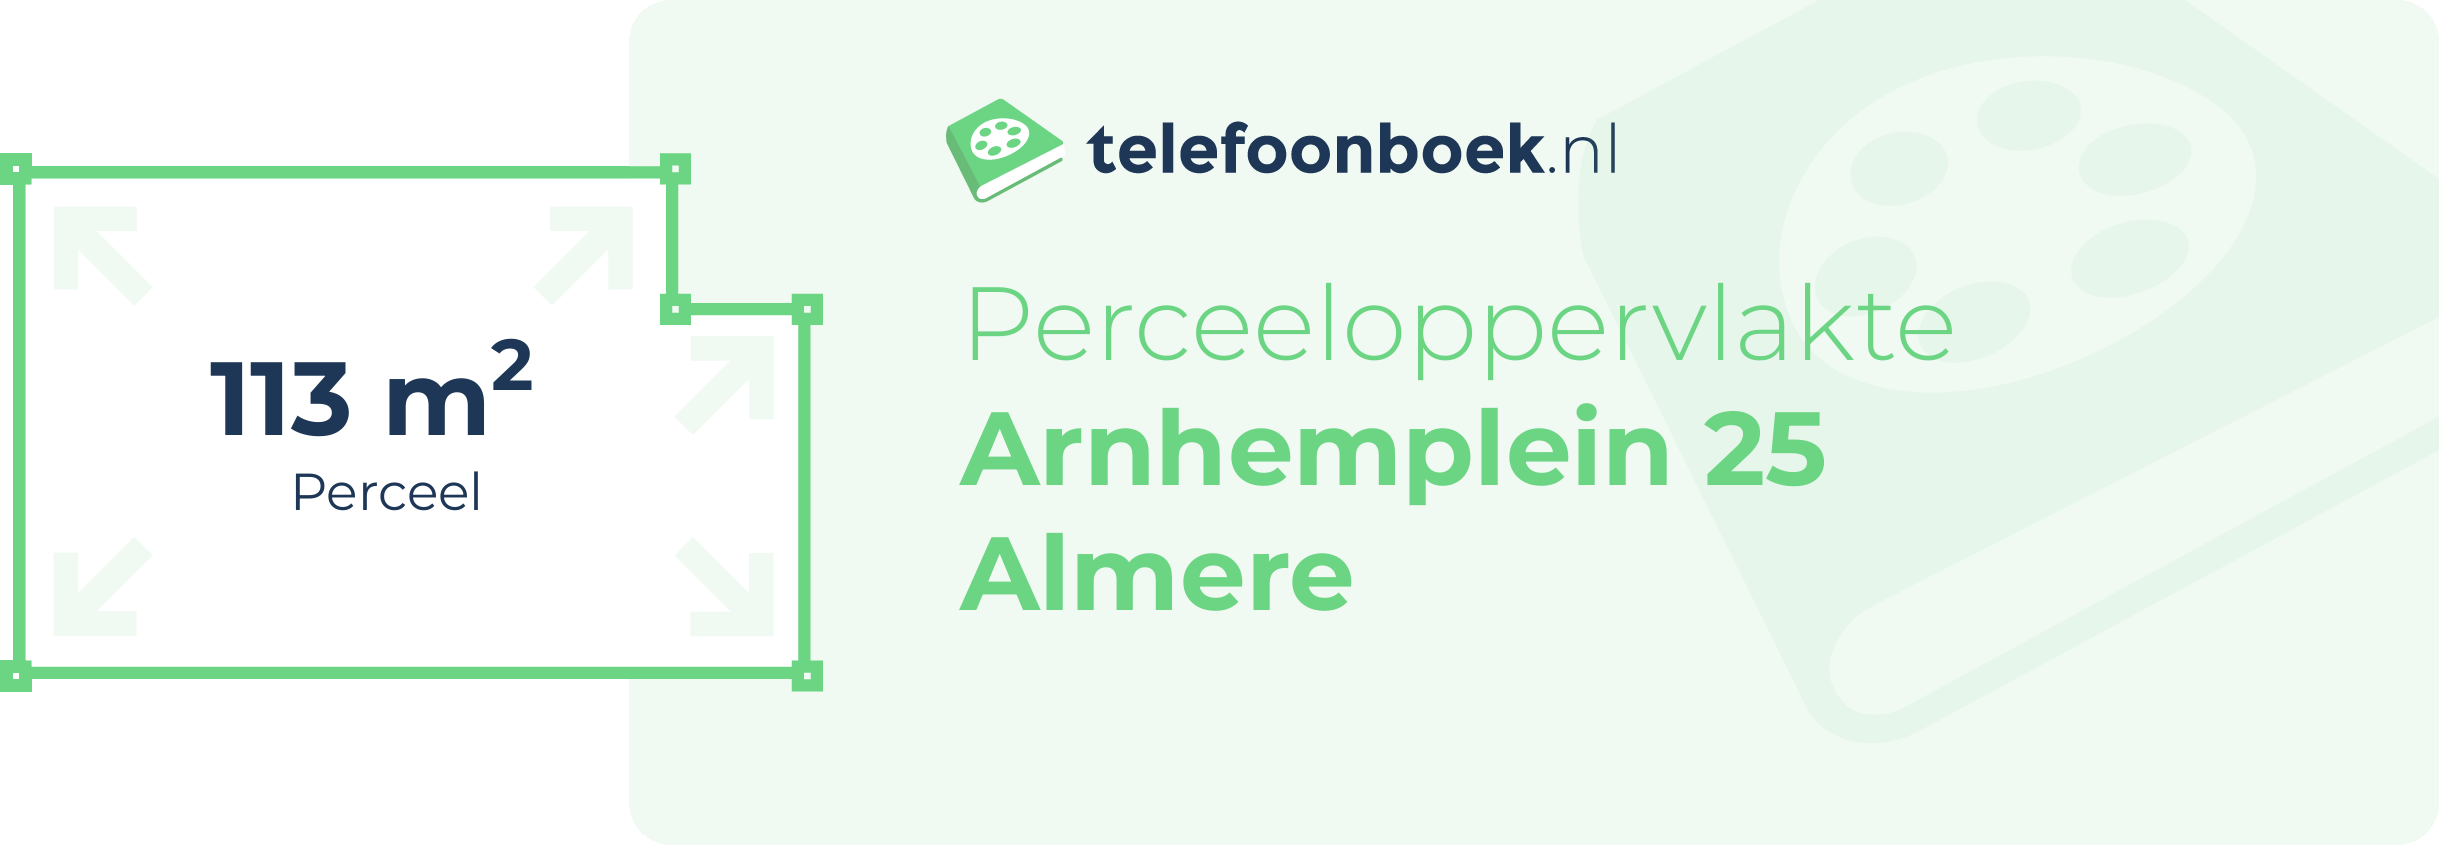 Perceeloppervlakte Arnhemplein 25 Almere